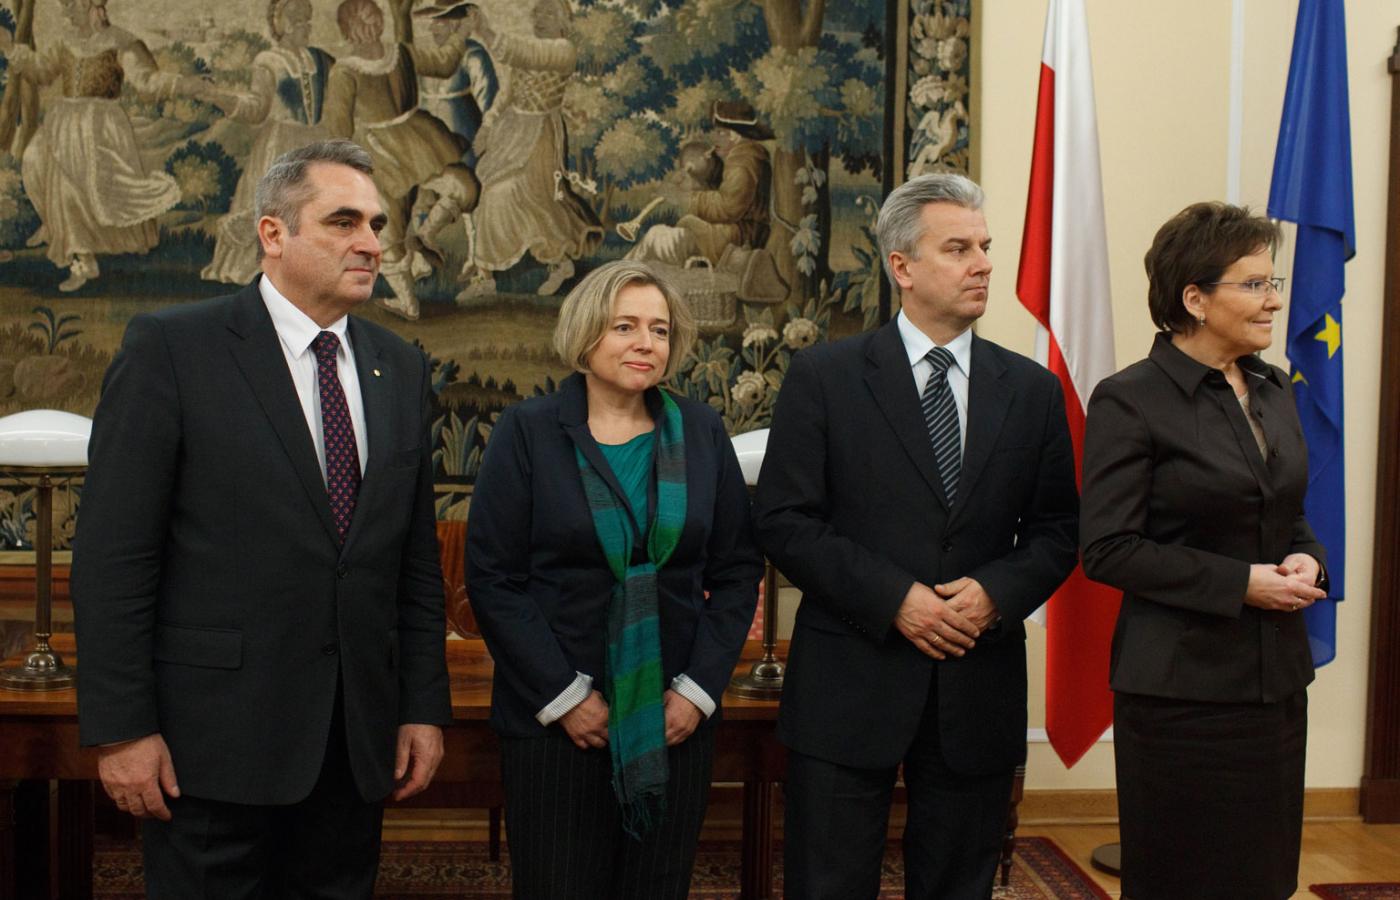 Marszałek Sejmu Ewa Kopacz (pierwsza z prawej) oraz wicemarszałkowie (od prawej): Cezary Grabarczyk, Wanda Nowicka i Eugeniusz Grzeszak.